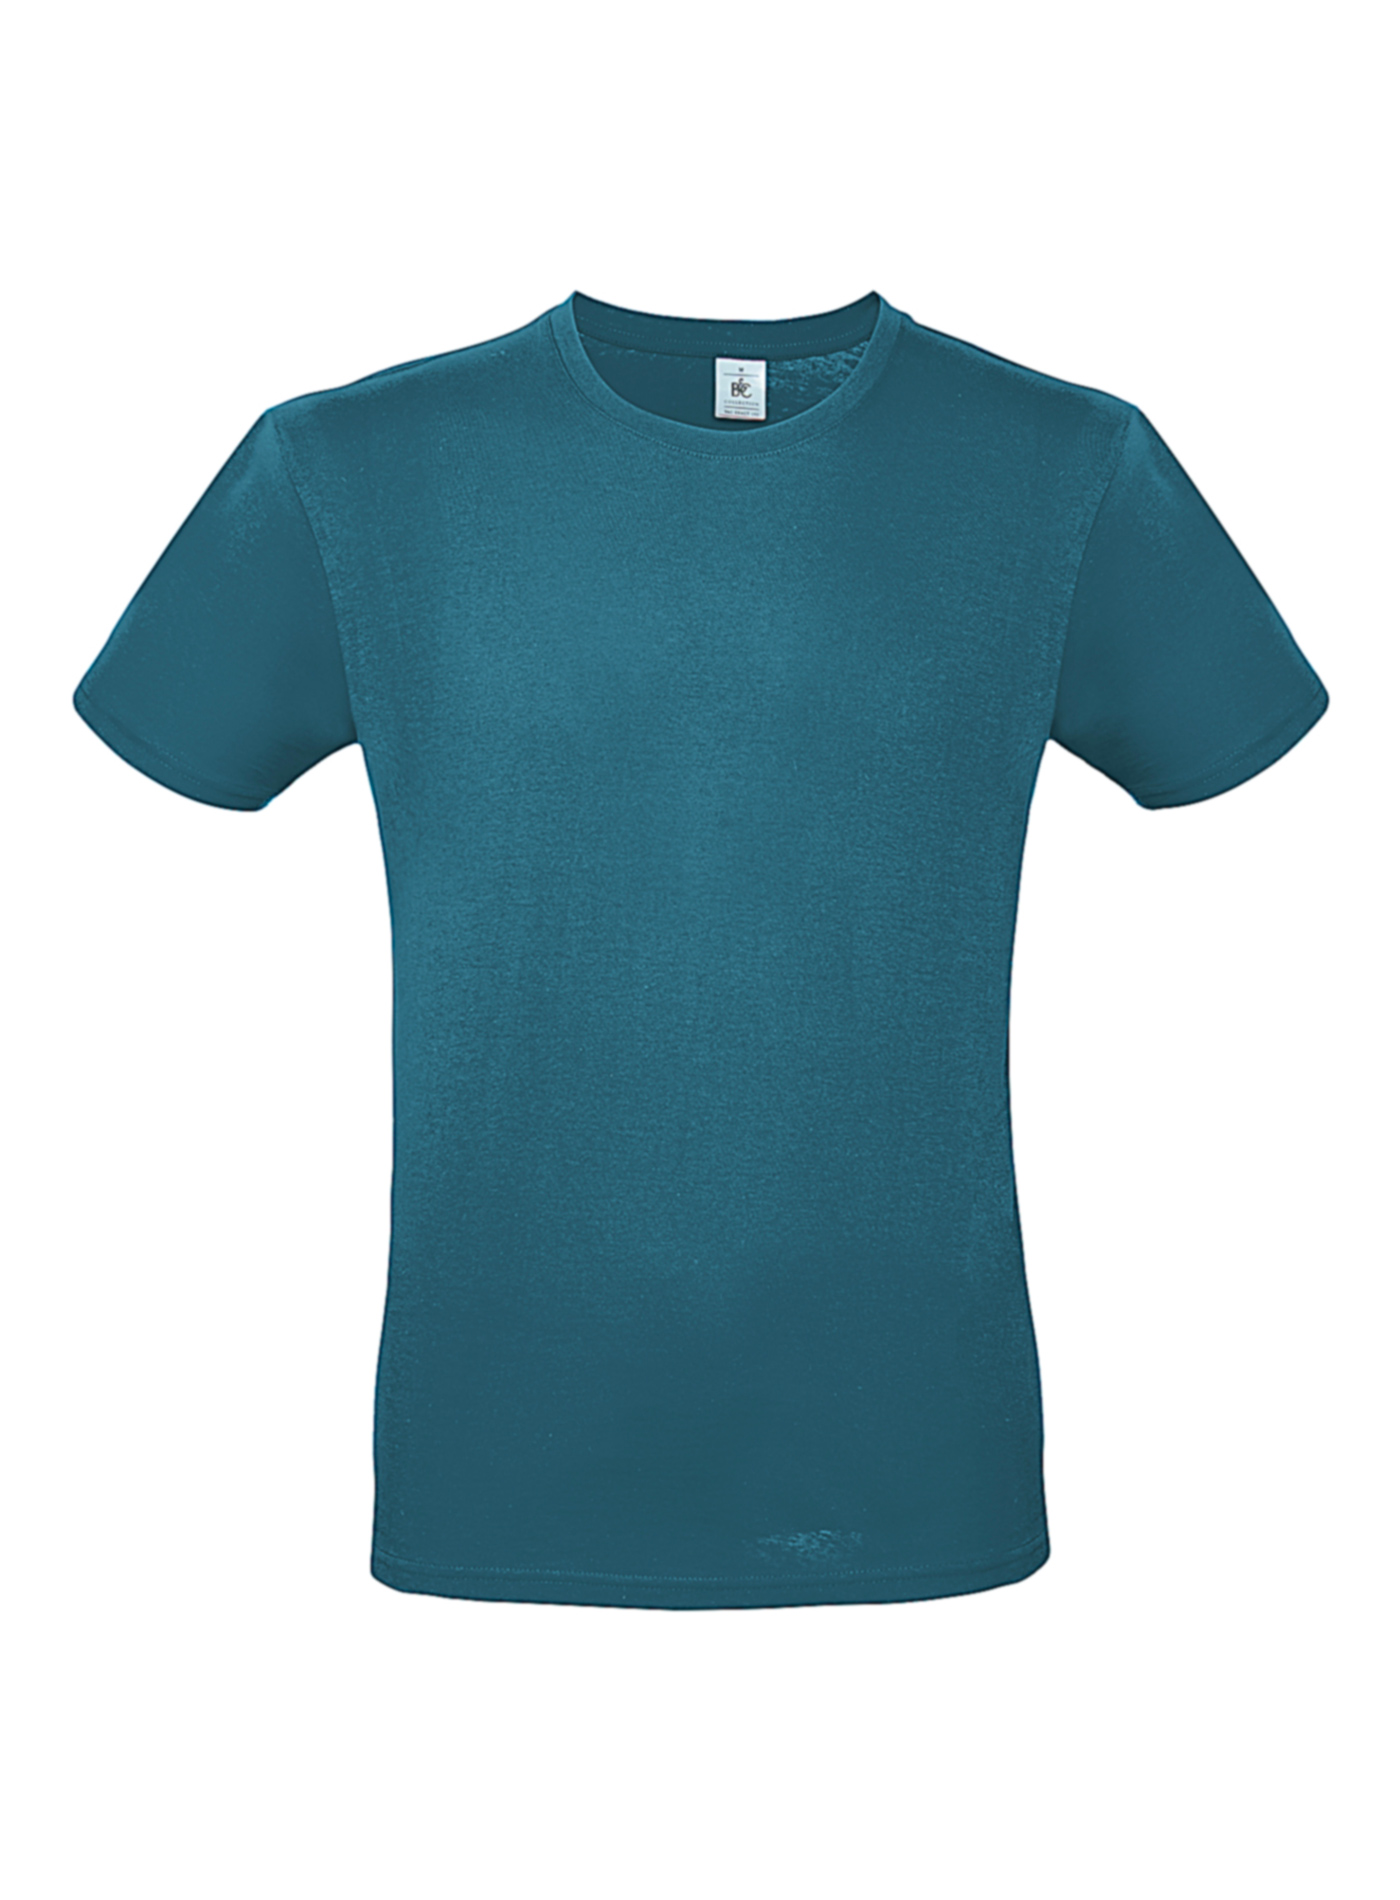 Pánské tričko B&C - Modrozelená S